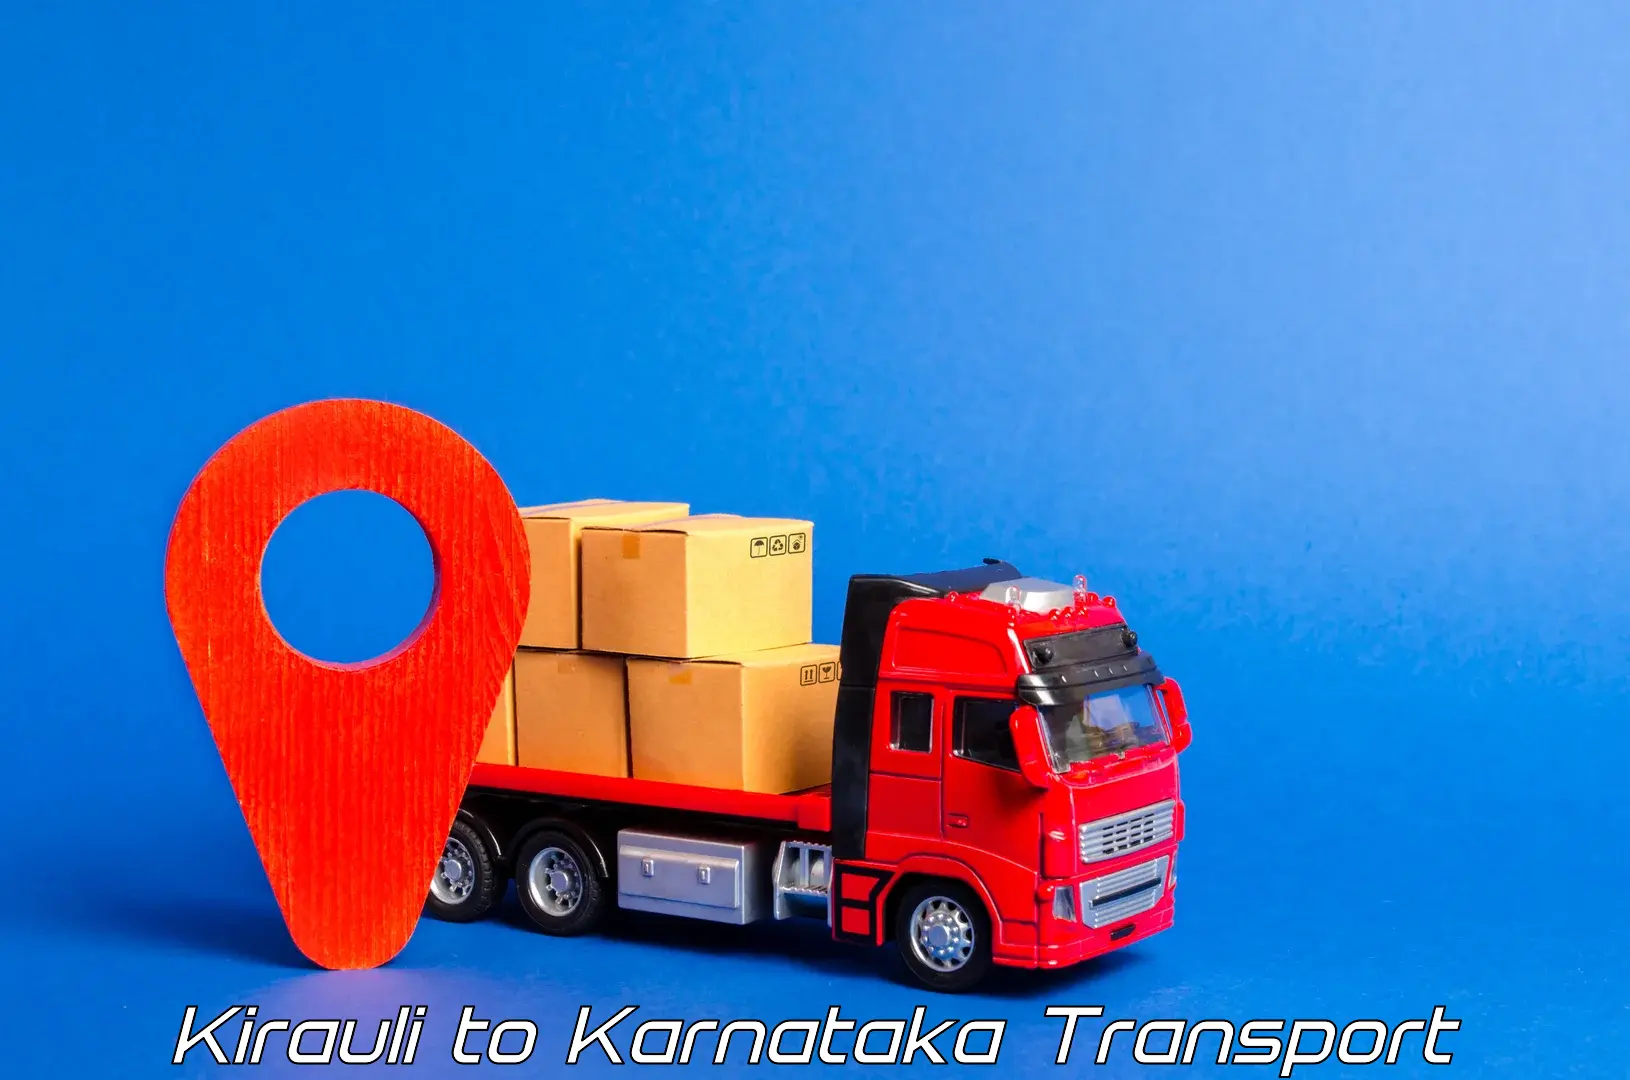 Online transport booking Kirauli to Bagaluru